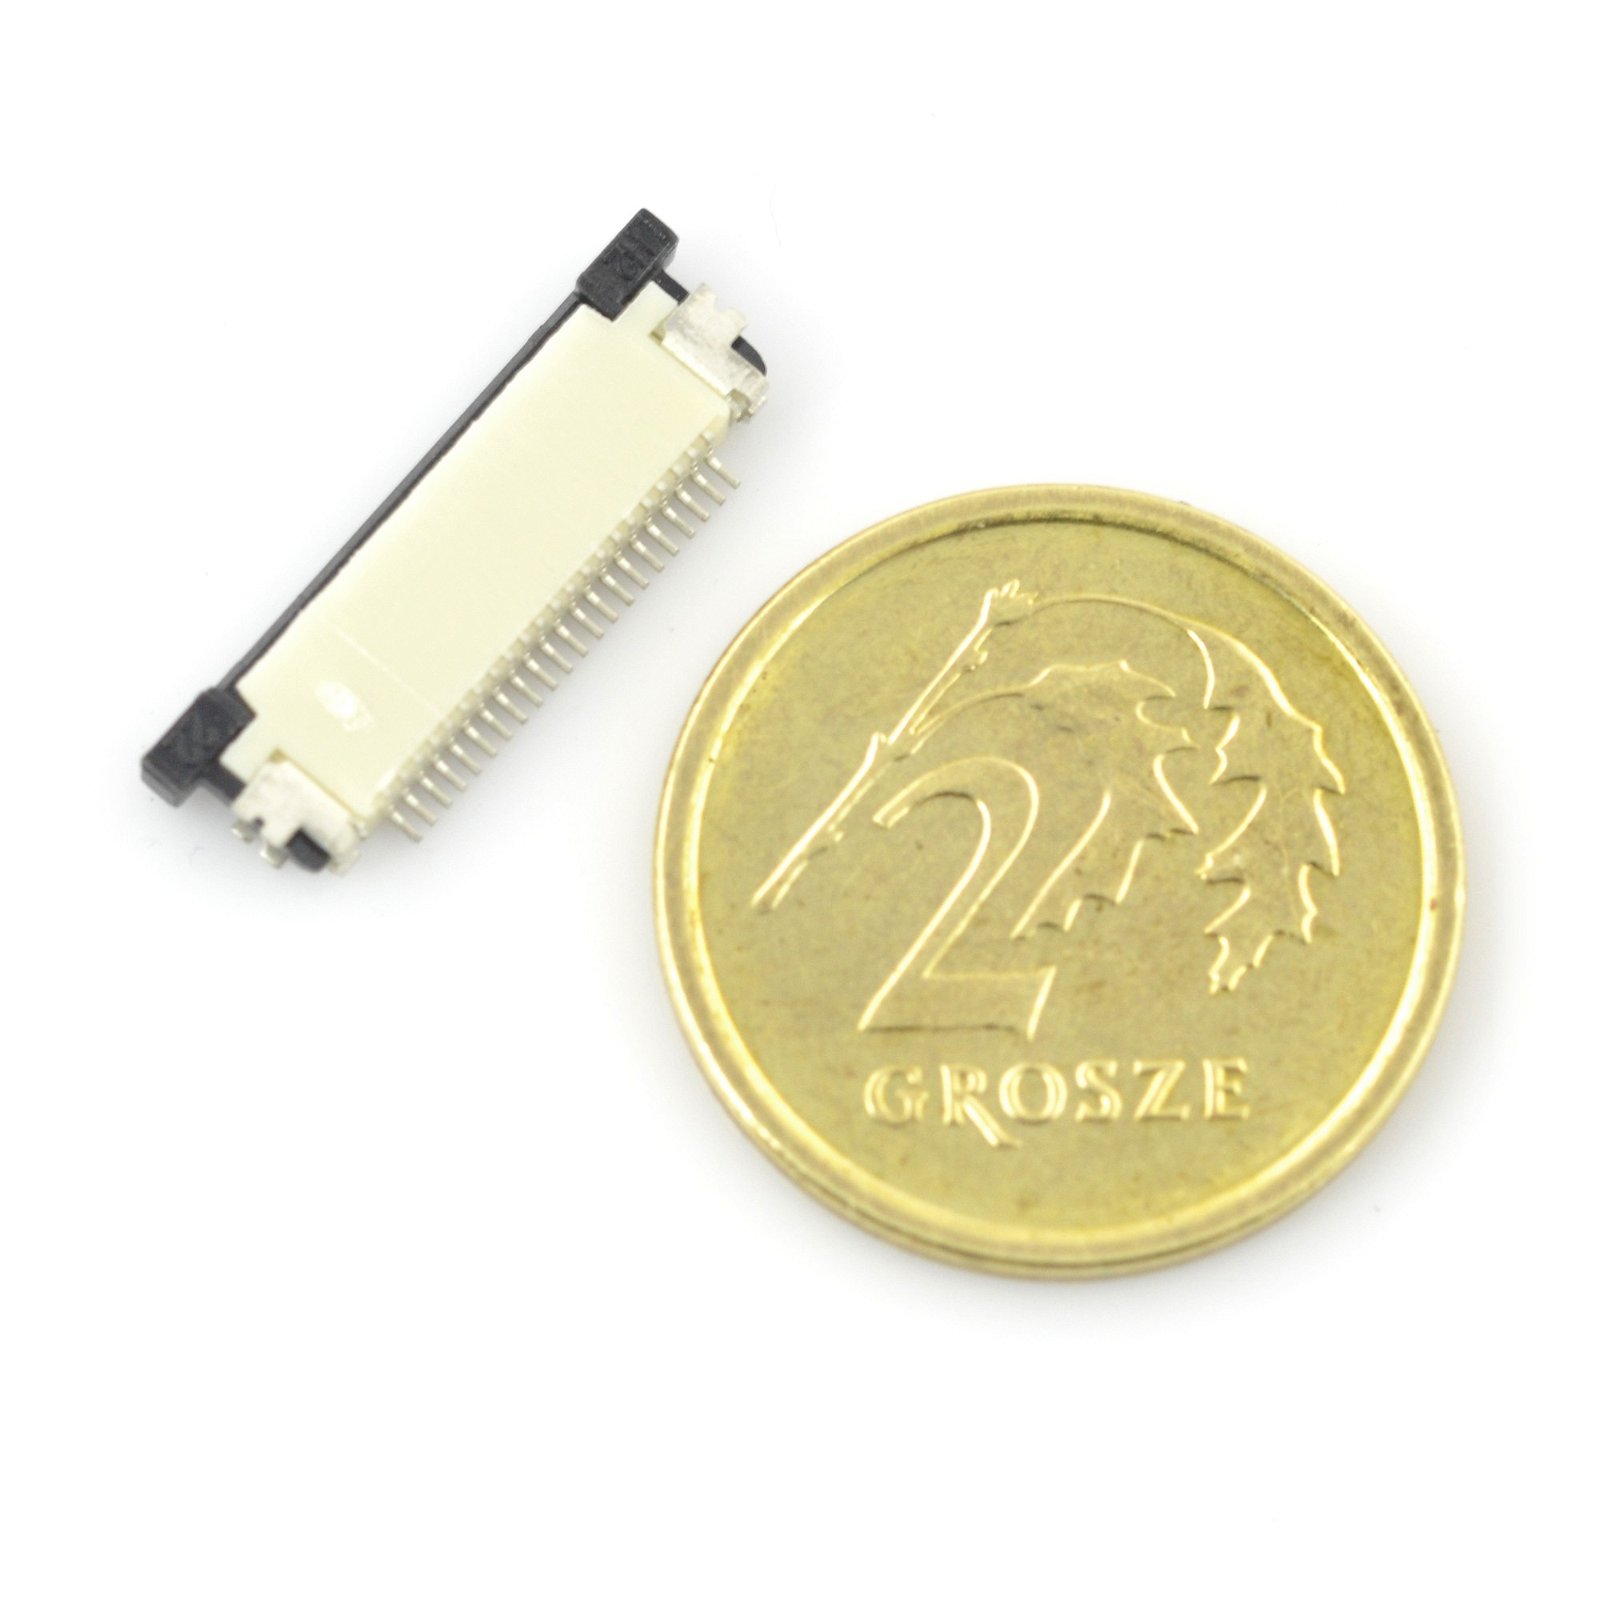 ZIF zásuvka, FFC / FPC, 22 pinů vodorovně, rozteč 0,5 mm, horní kontakt